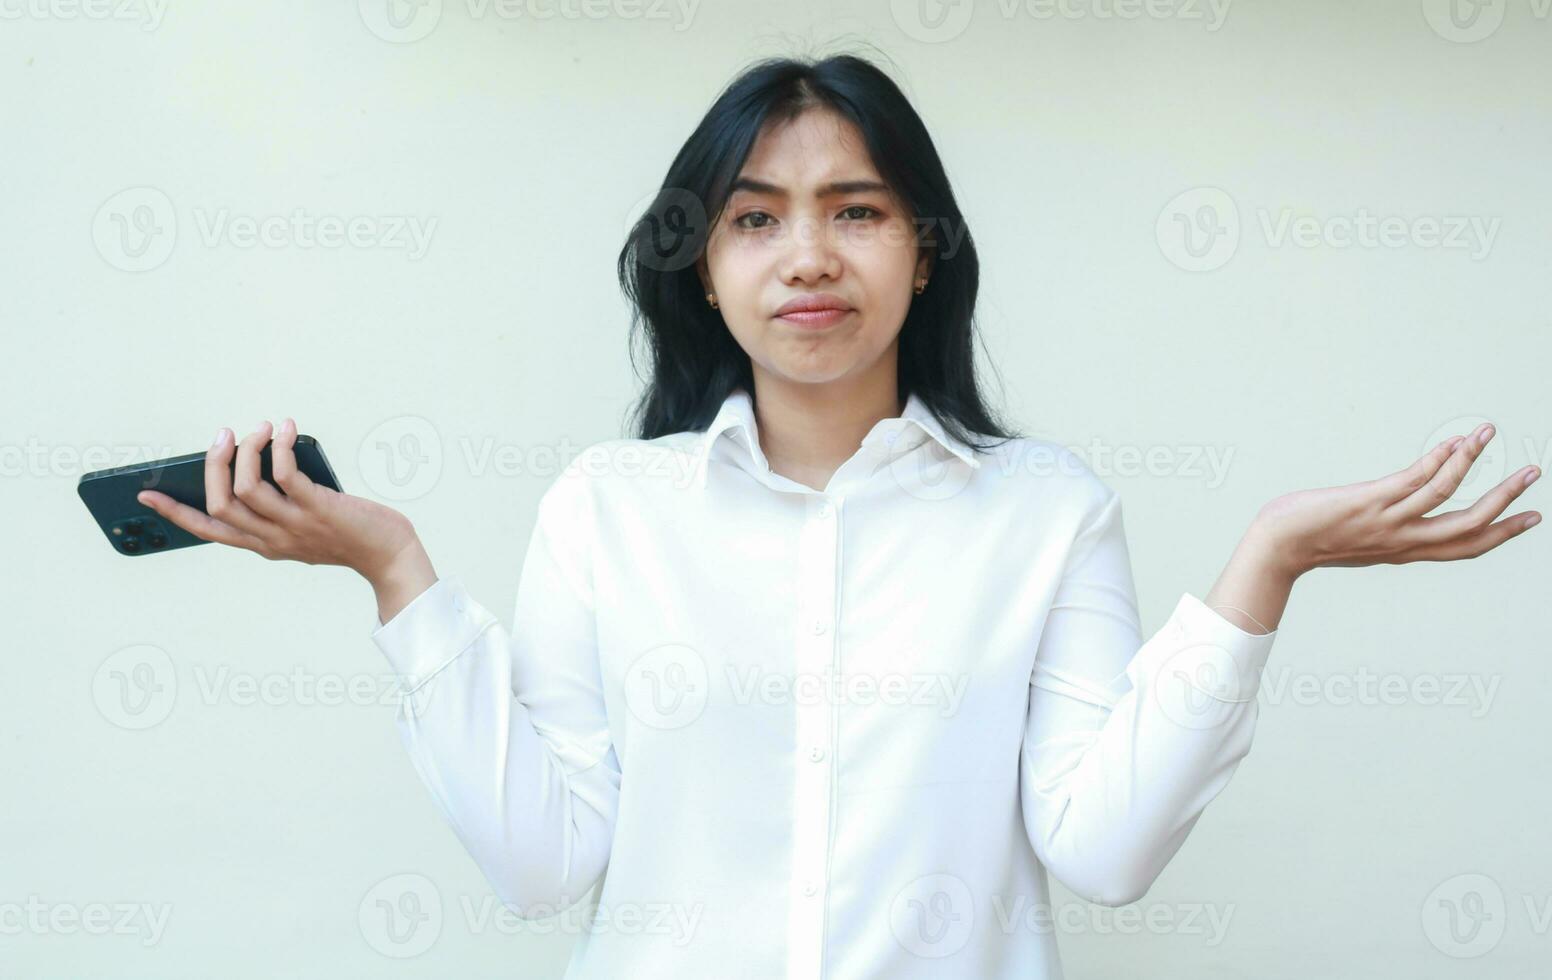 portret van verward Aziatisch vrouw secretaris Holding smartphone schouderophalend schouders houden palm zijwaarts op zoek Bij camera met onzeker uitdrukking, hebben Nee idee gebaar, vervelend wit formeel pak, staand foto